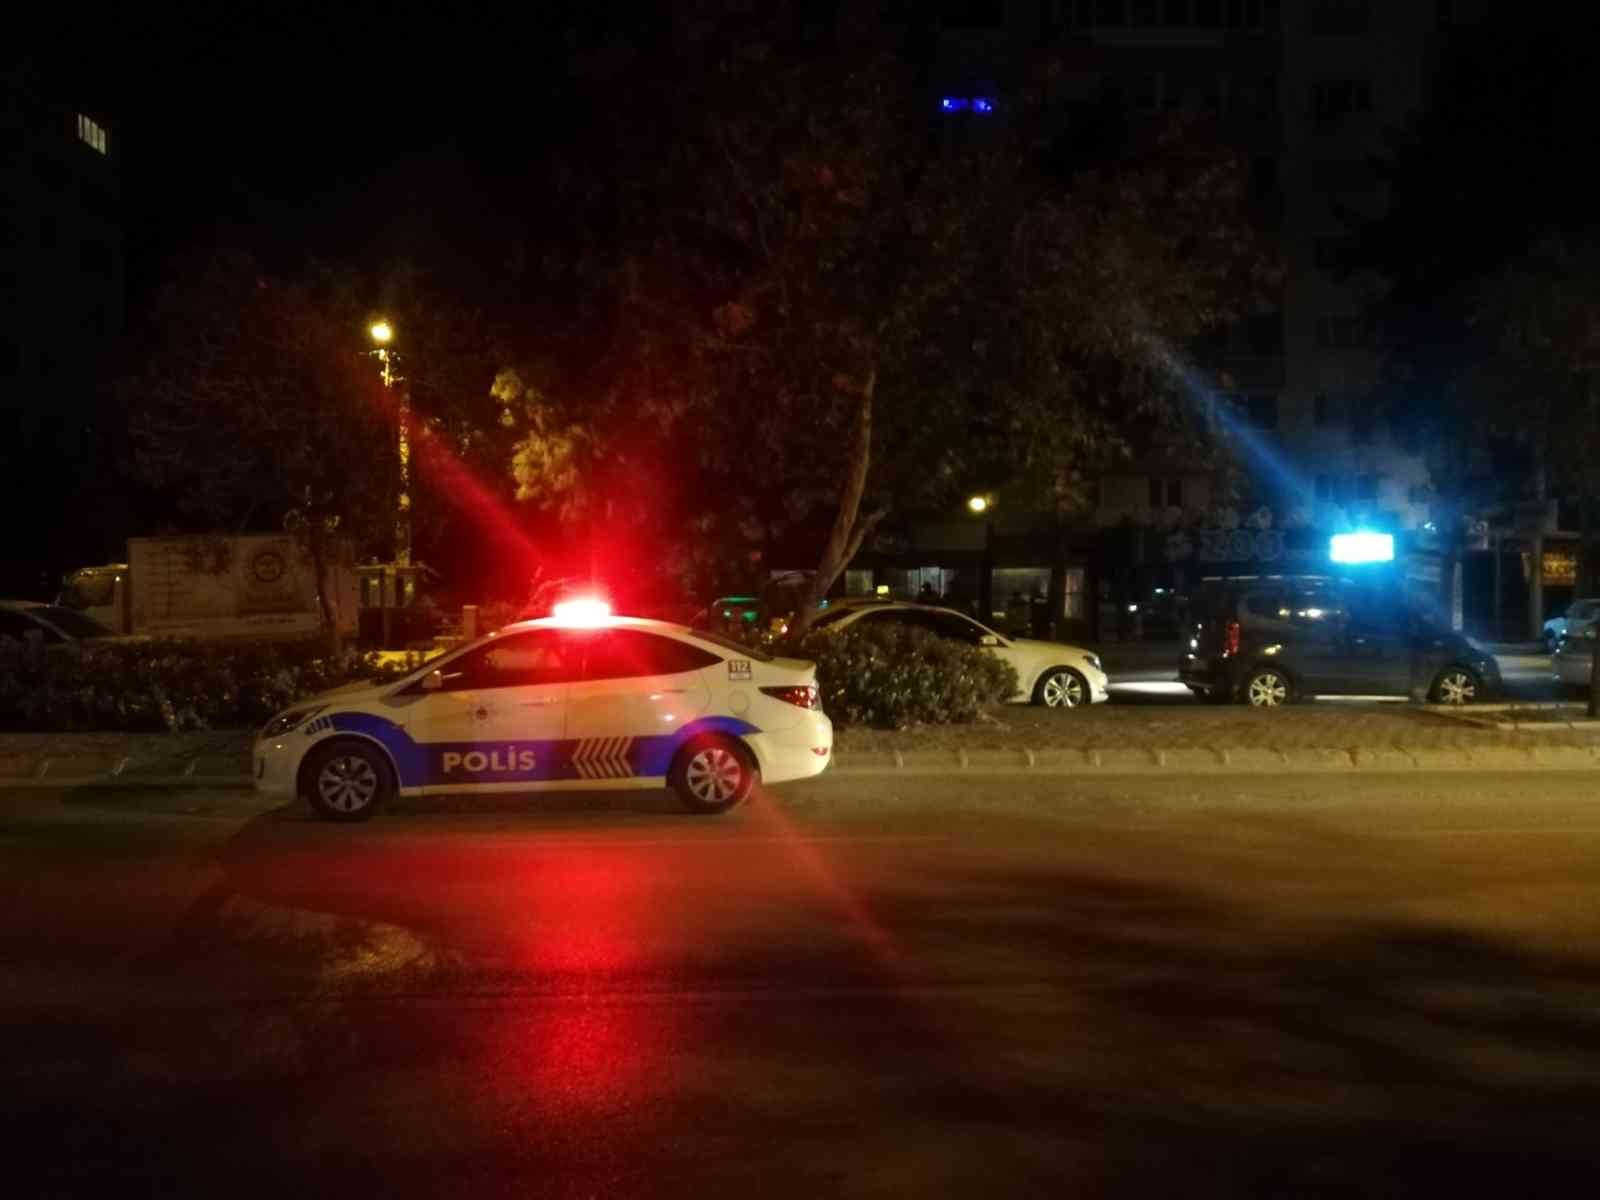 İzmir’de ticari taksi ile silahlı saldırı: 1 ölü #izmir